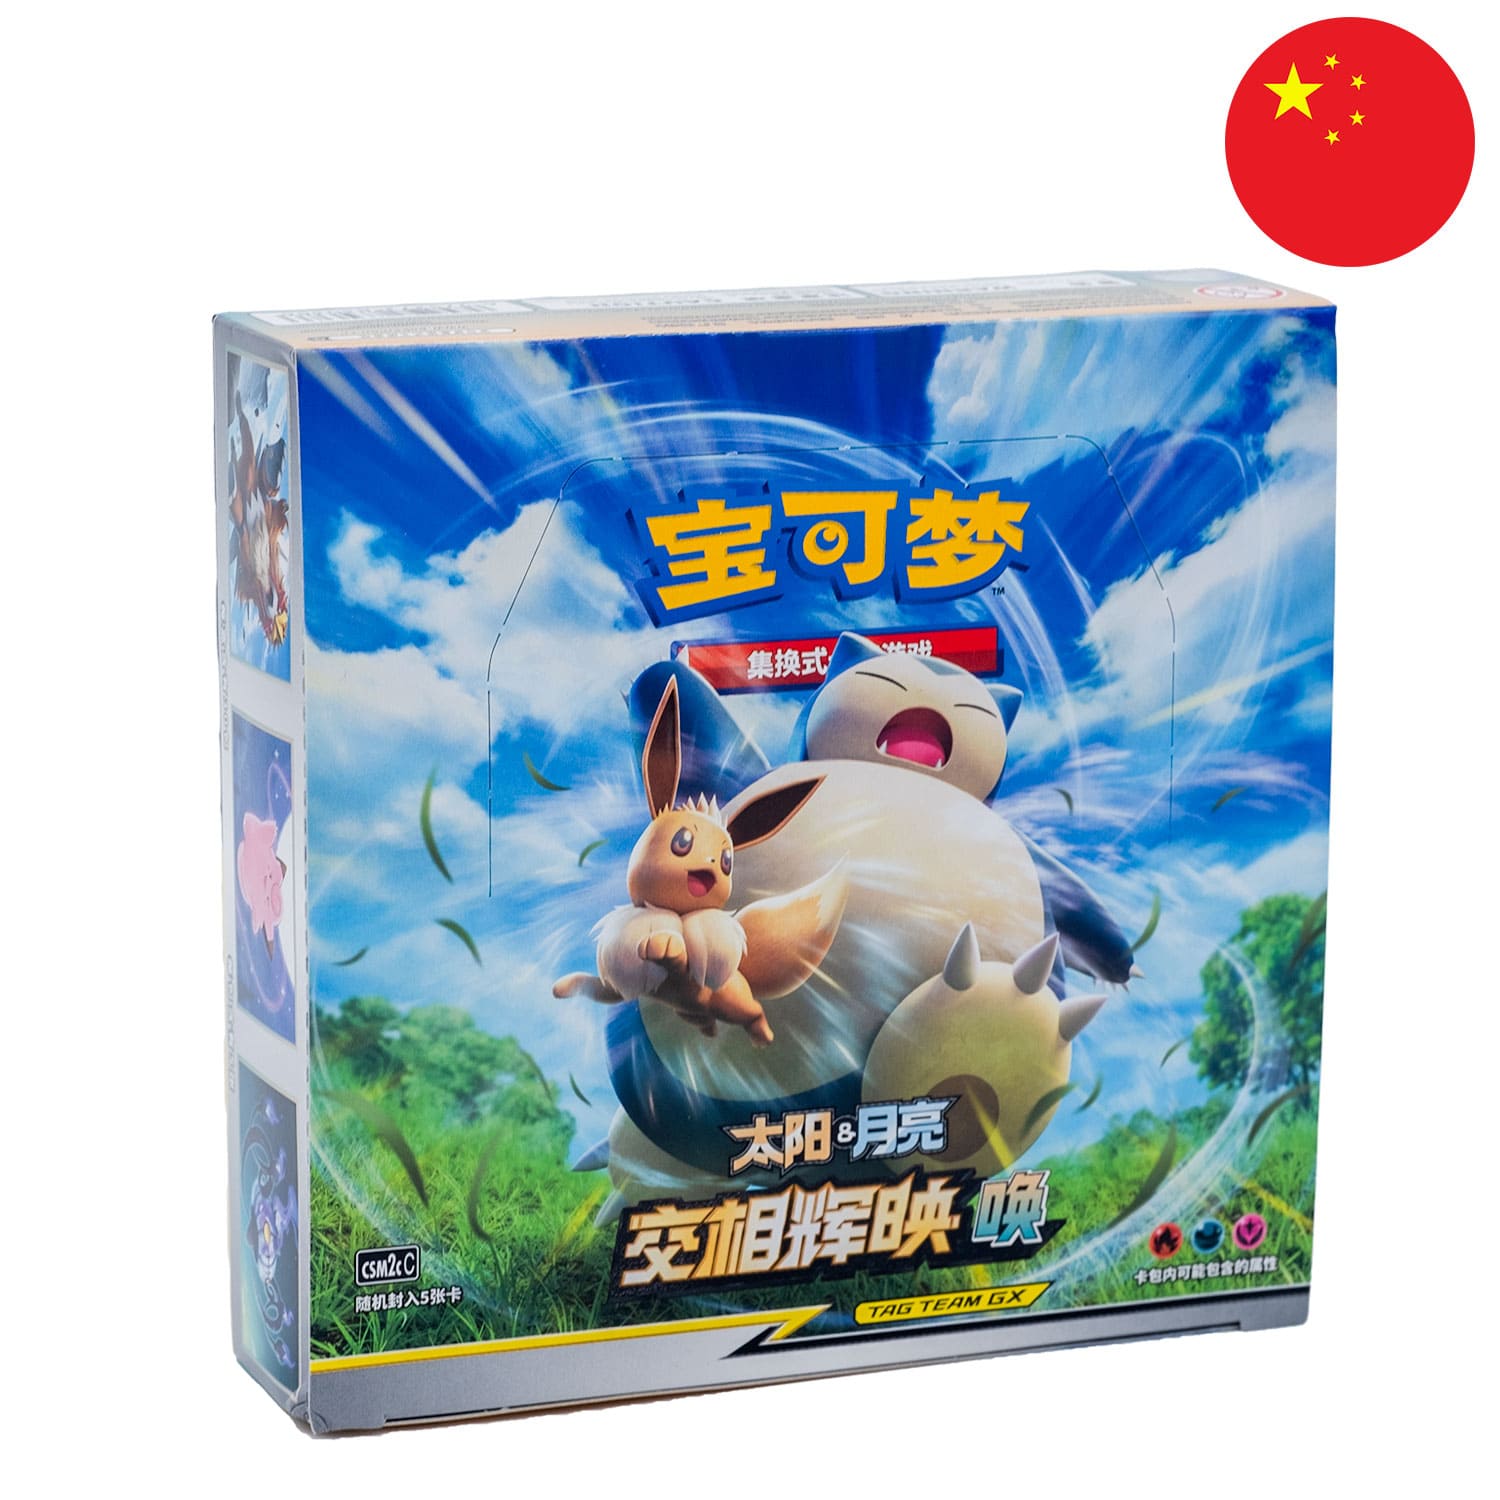 Das Tag Team GX Pokemon Display Shining Synergy: Summon, frontal&schräg als Hauptbild, mit der Flagge Chinas in der Ecke.